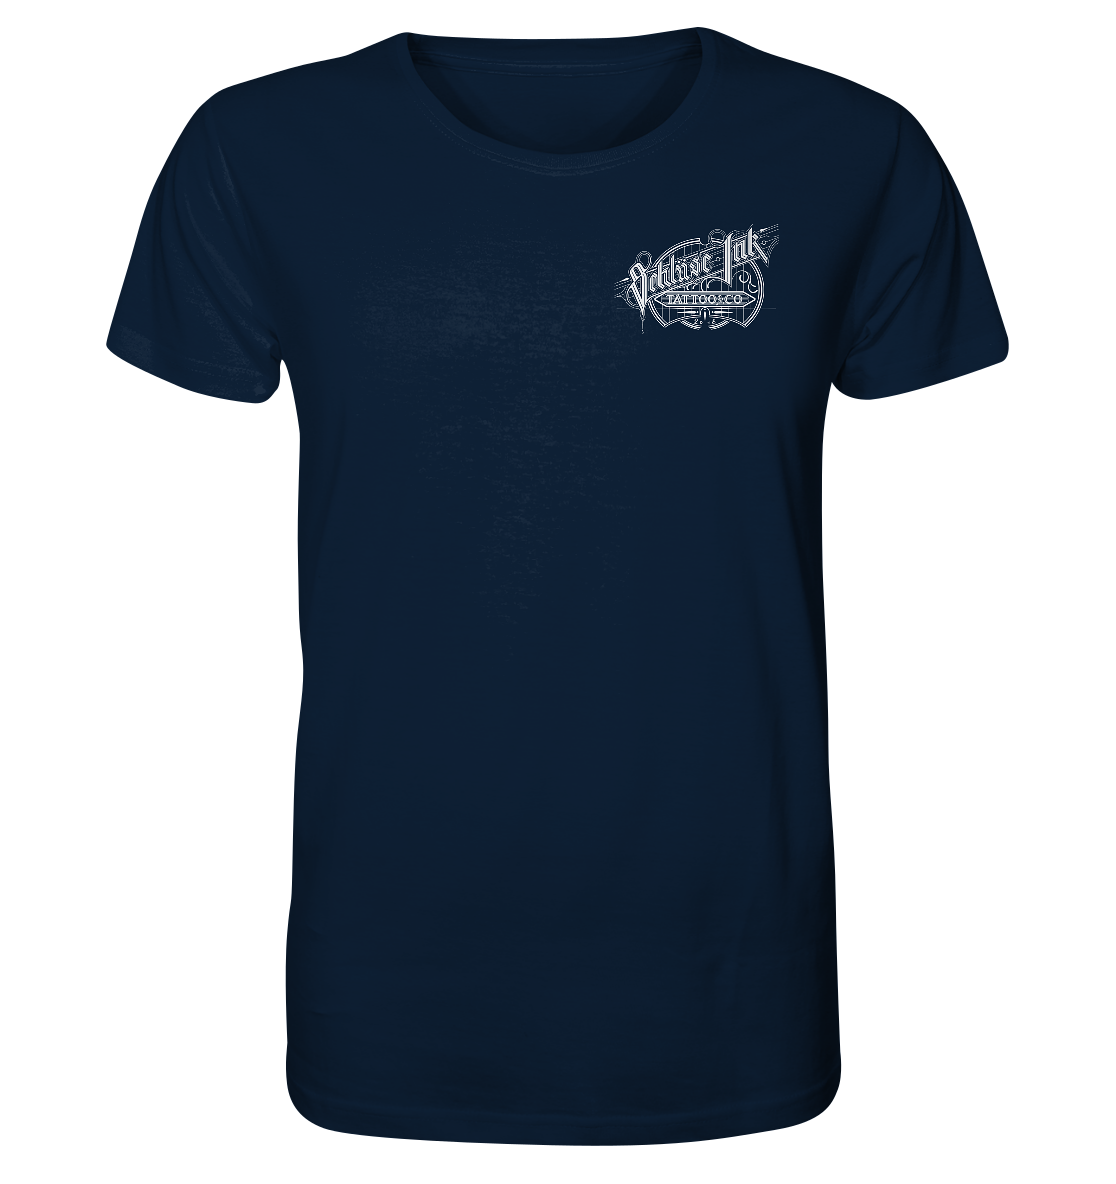 Schlüse-Ink® Kreuzstich Organic Shirt dunkel - Organic Shirt